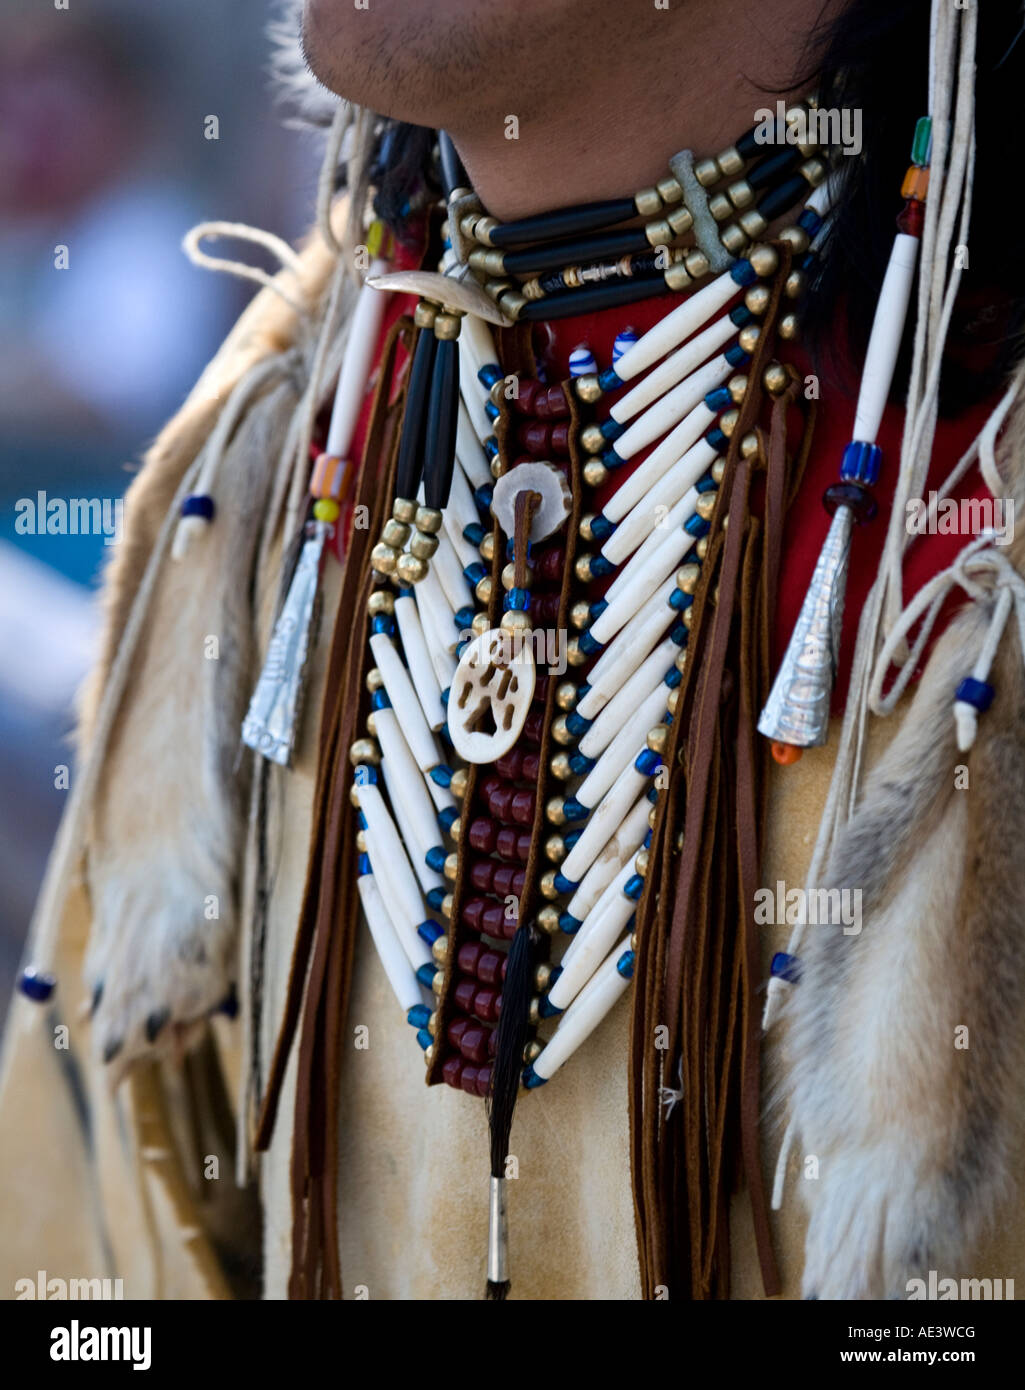 Detalle de la Joyería collar de nativos americanos Fotografía de Alamy